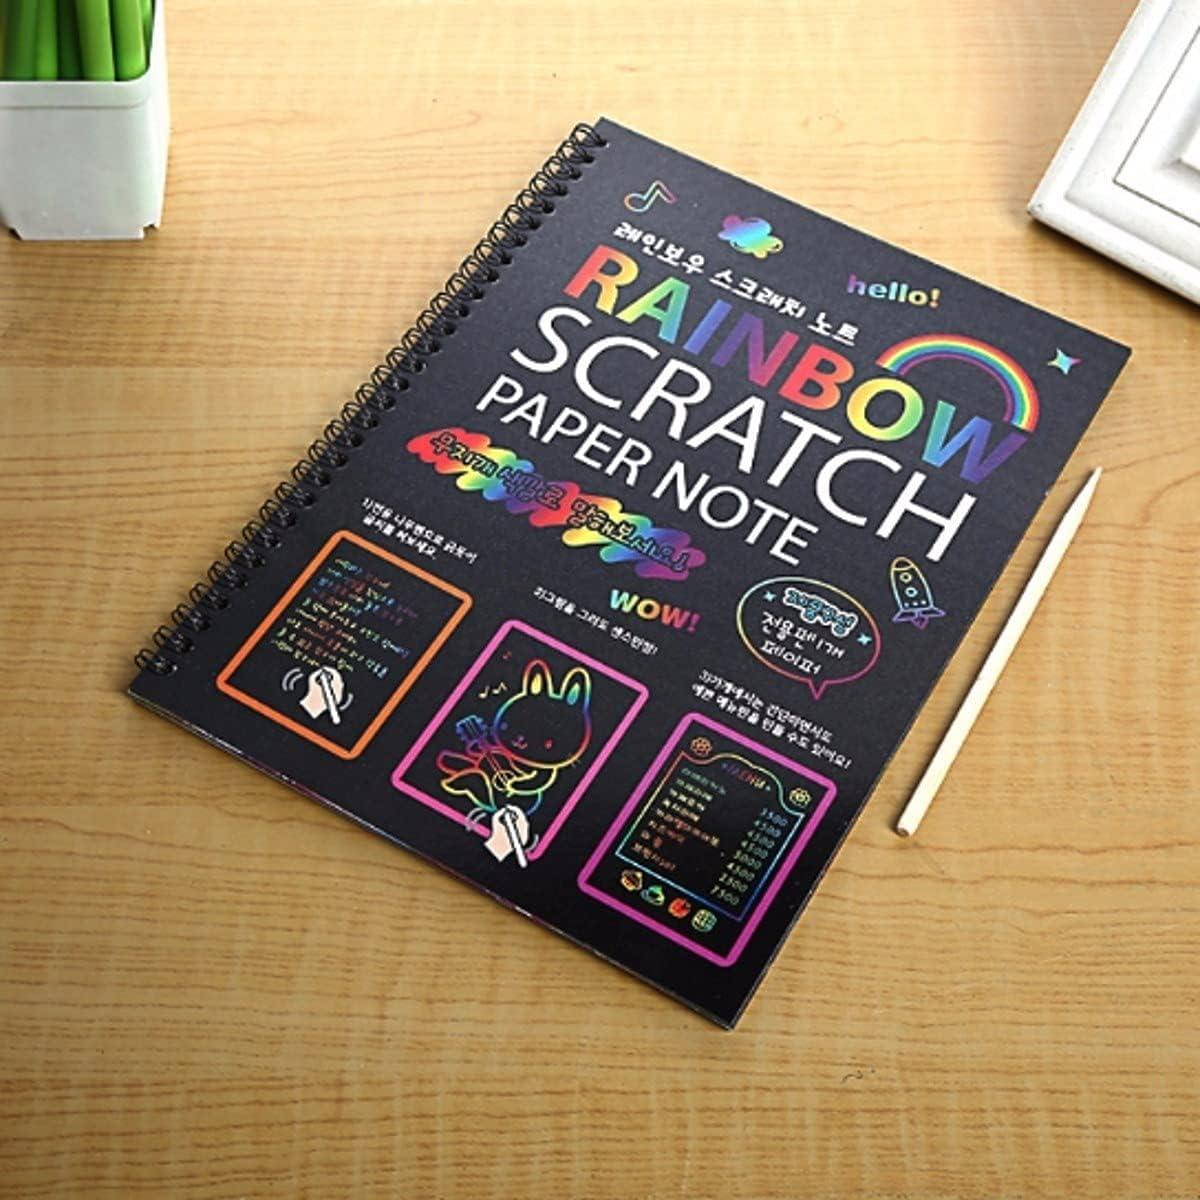 How to make magic scratch book /Making scratch notebook /DIY